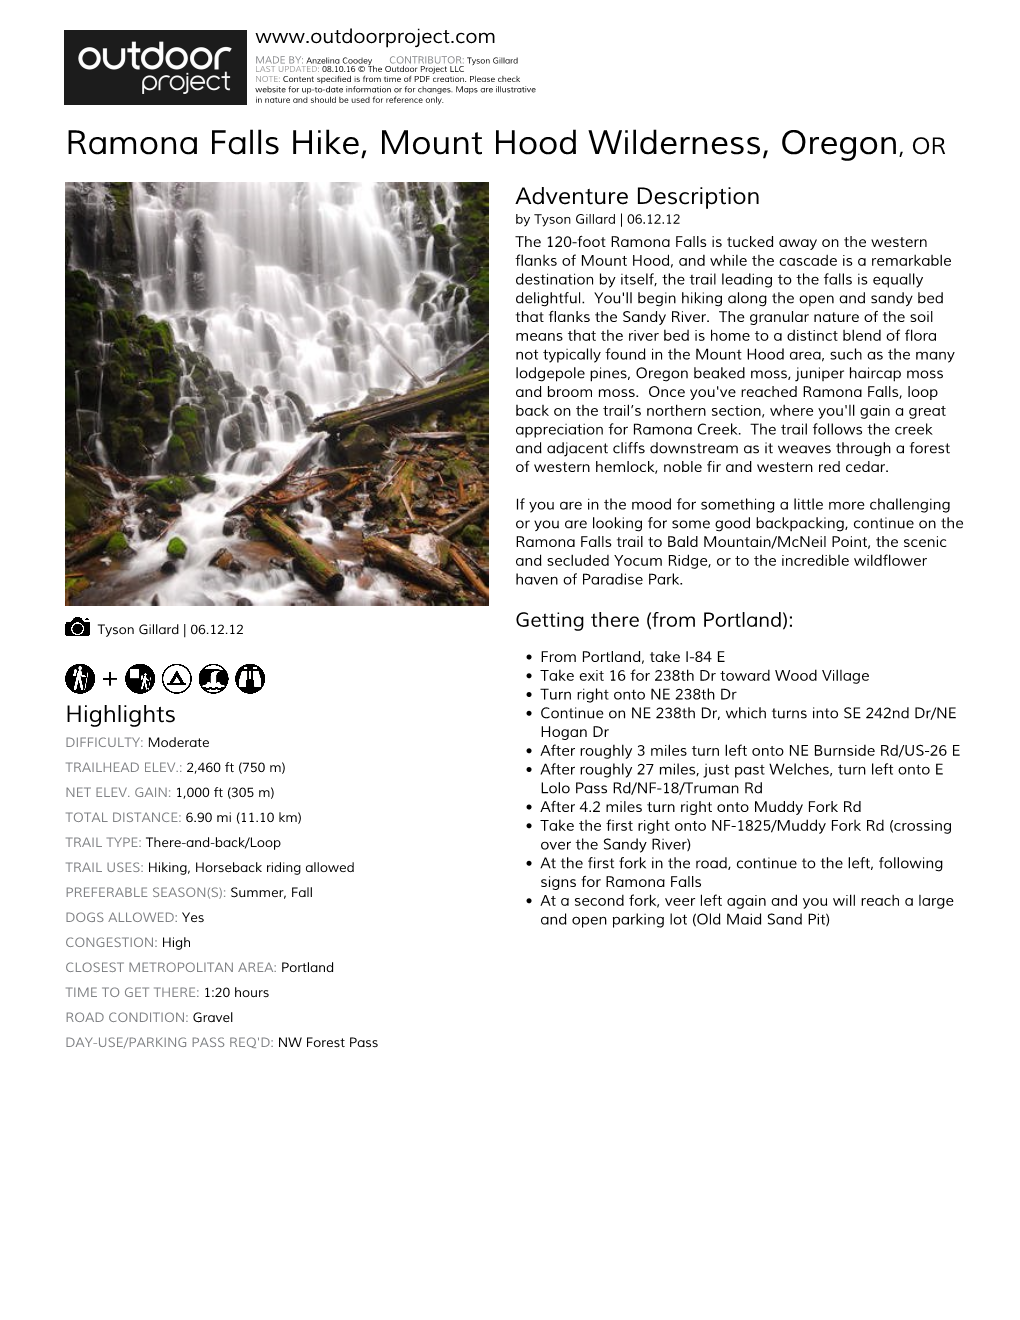 Ramona Falls Hike, Mount Hood Wilderness, Oregon, OR